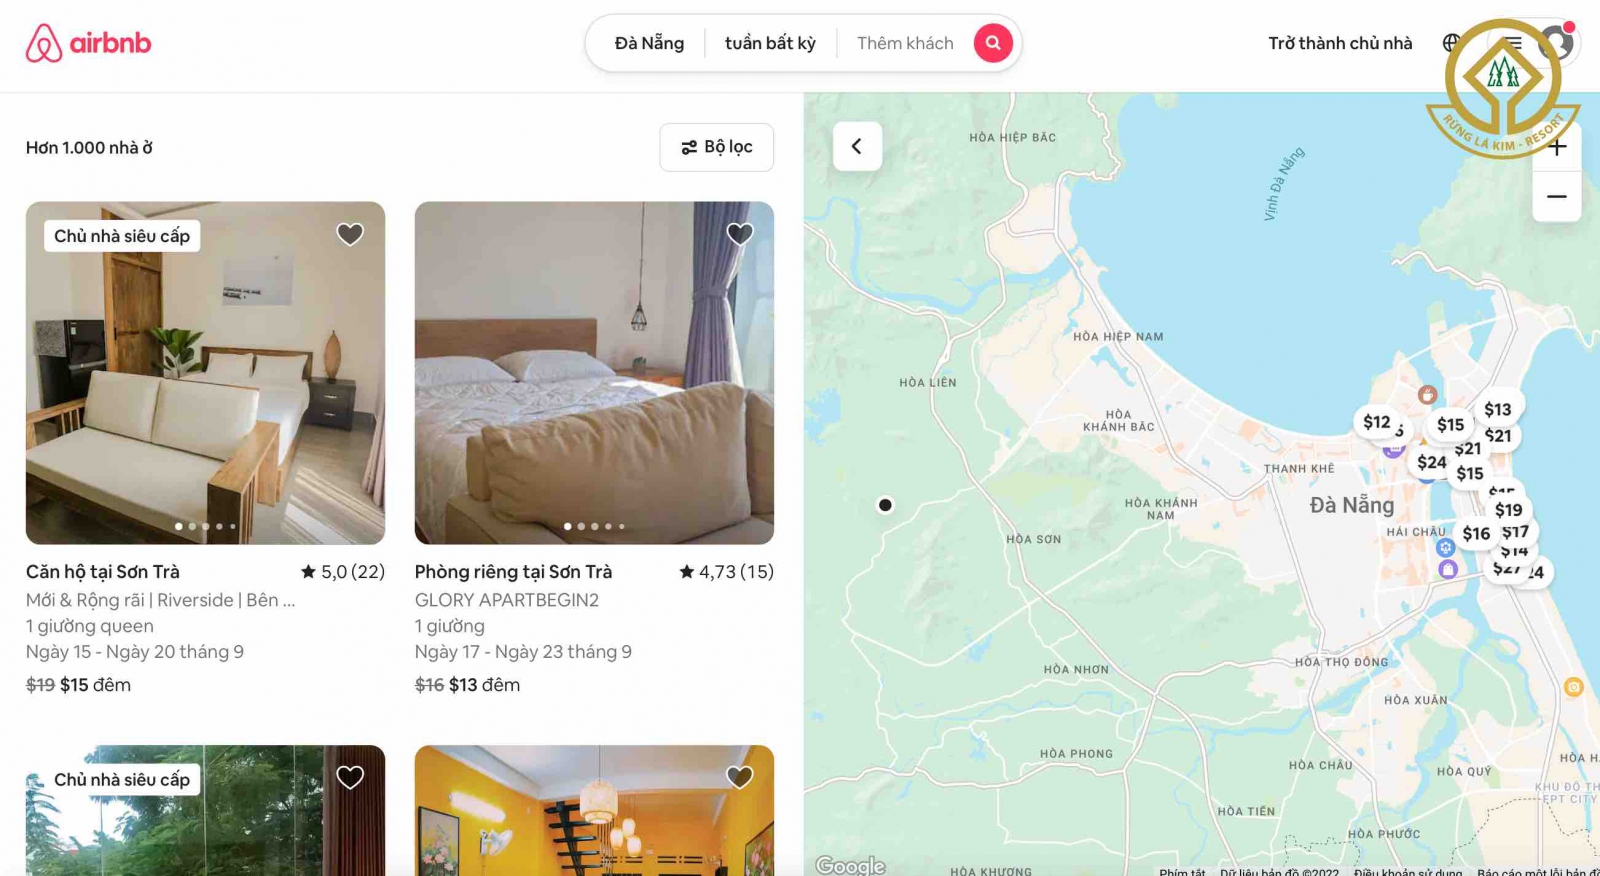 Các Homestay tiện lợi được airbnb cung cấp